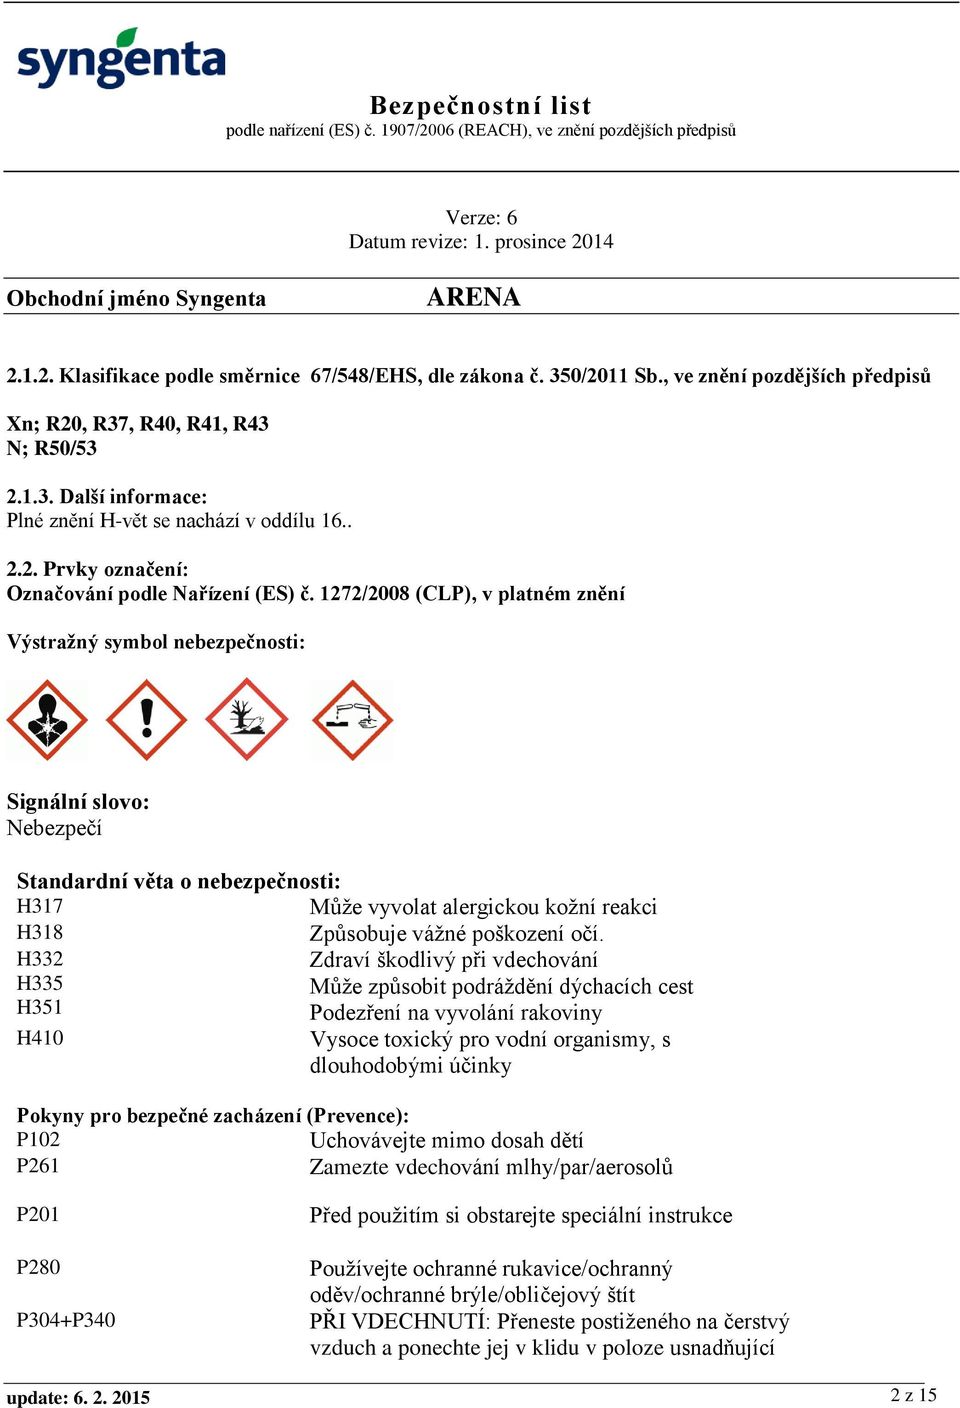 1272/2008 (CLP), v platném znění Výstražný symbol nebezpečnosti: Signální slovo: Nebezpečí Standardní věta o nebezpečnosti: H317 Může vyvolat alergickou kožní reakci H318 Způsobuje vážné poškození